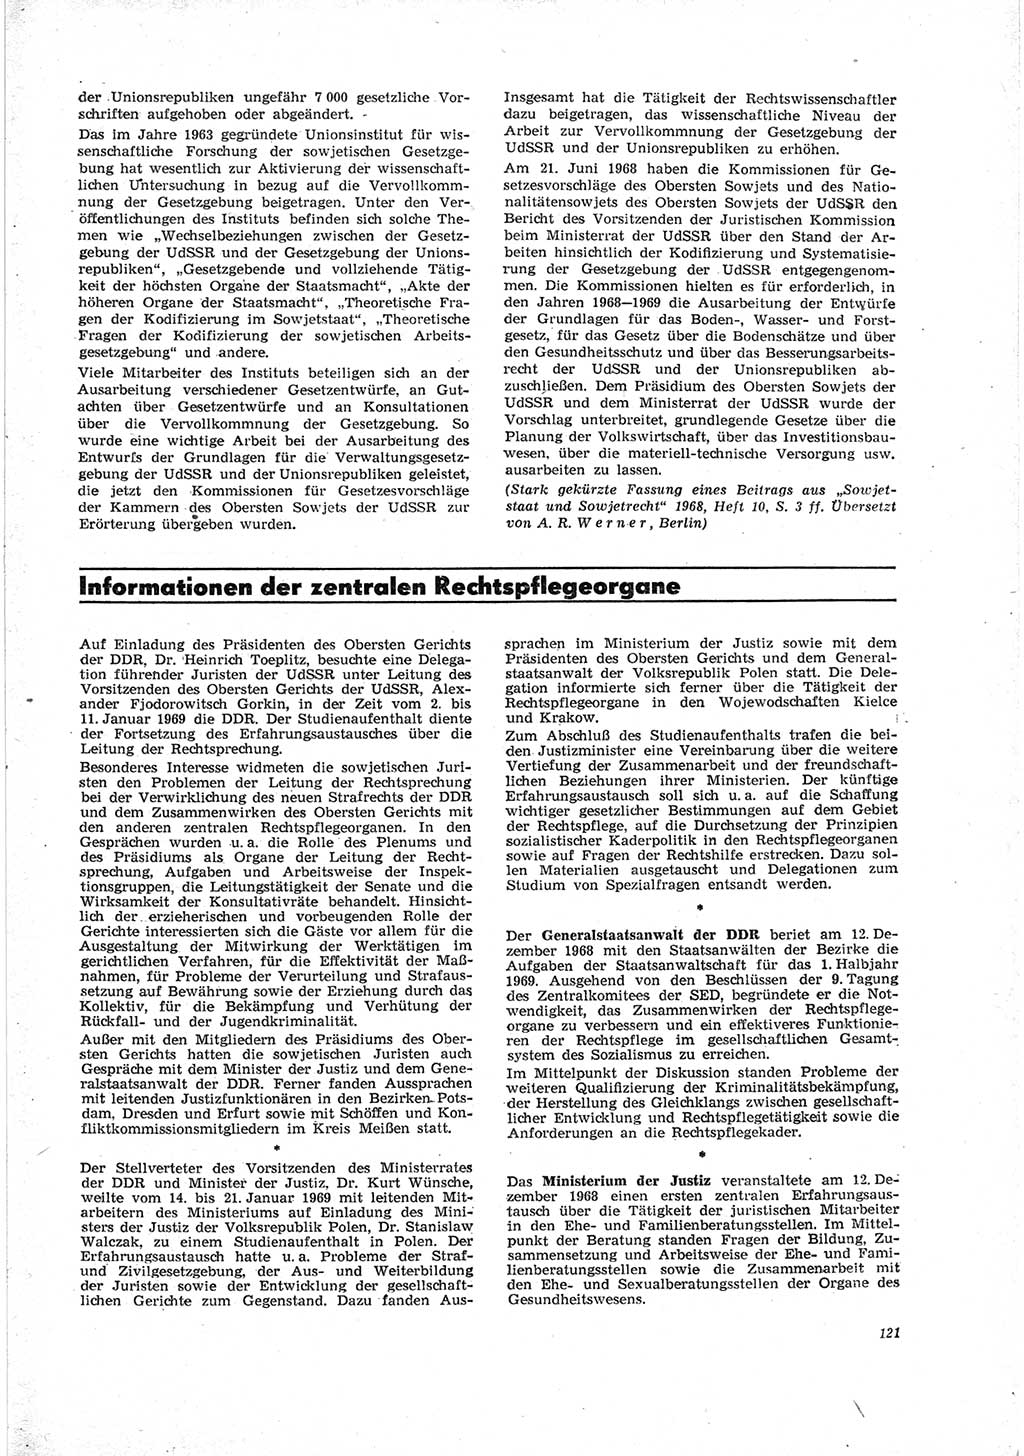 Neue Justiz (NJ), Zeitschrift für Recht und Rechtswissenschaft [Deutsche Demokratische Republik (DDR)], 23. Jahrgang 1969, Seite 121 (NJ DDR 1969, S. 121)